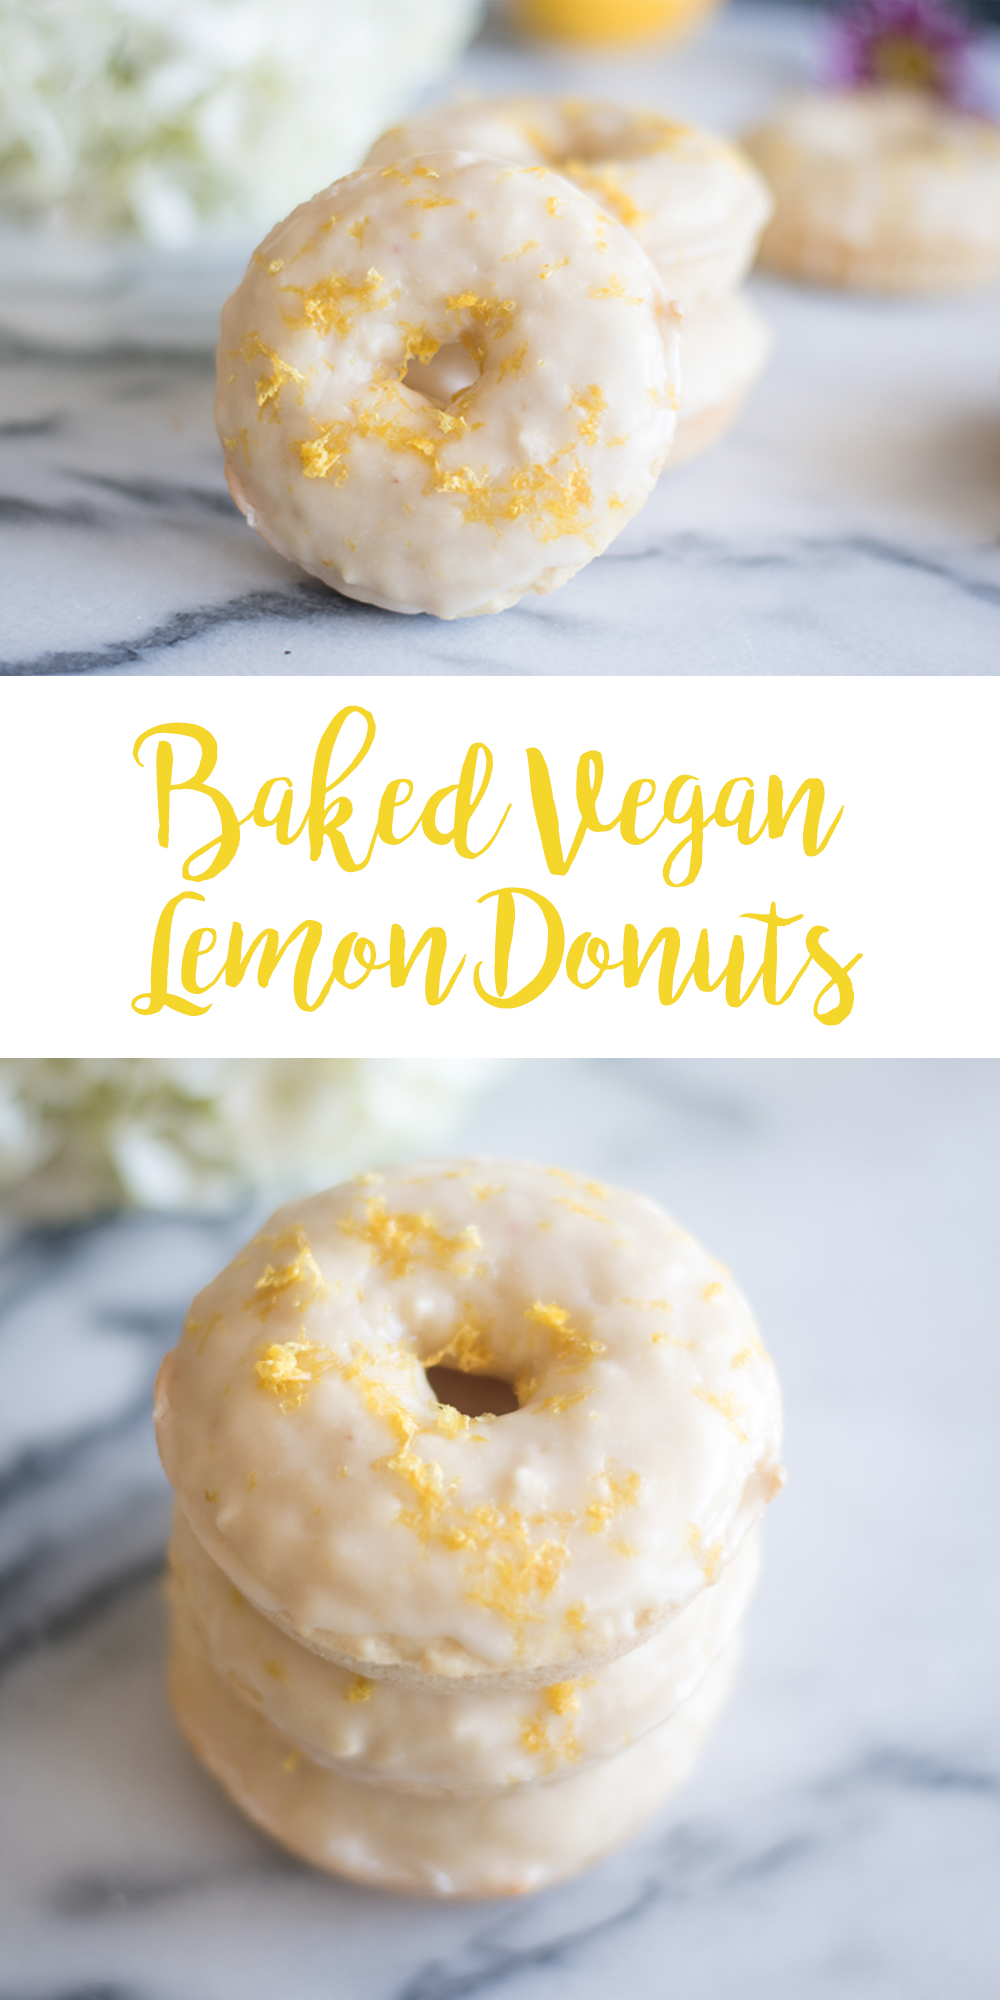 Baked Vegan Lemon Donuts are the perfect donut for spring! #vegan #donut